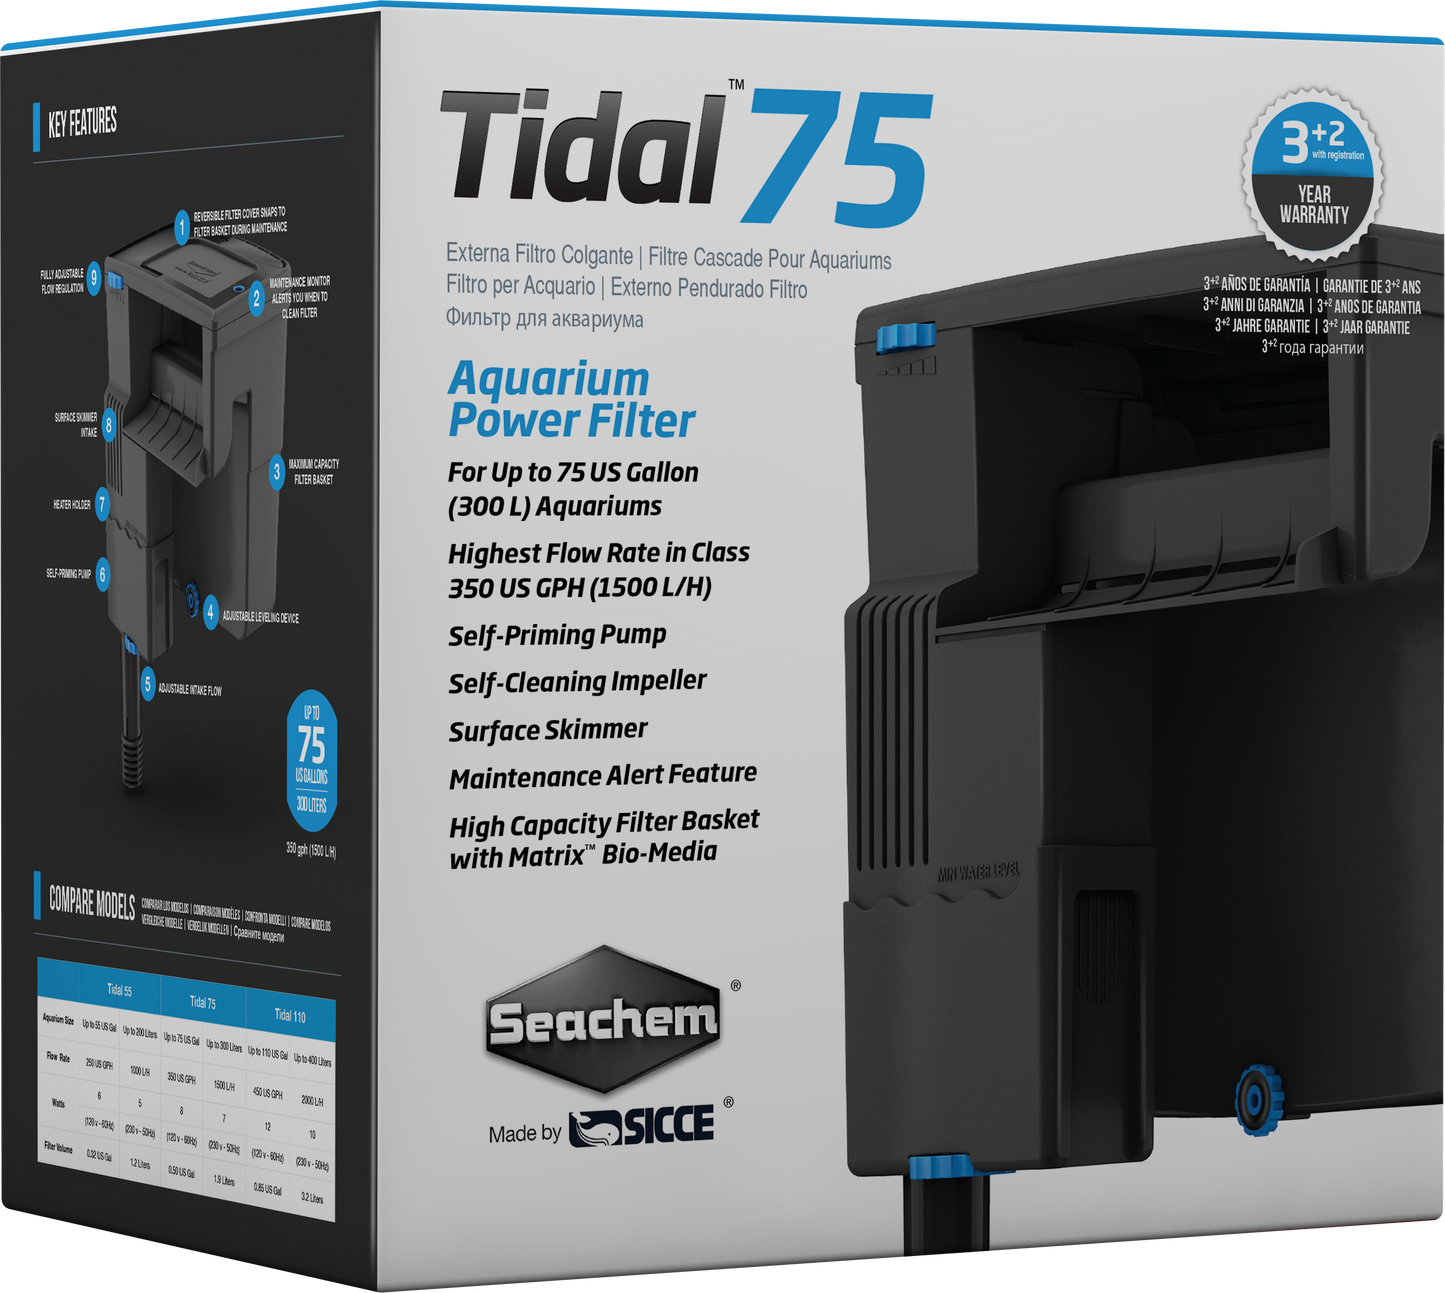 Seachem Tidal Power Filter